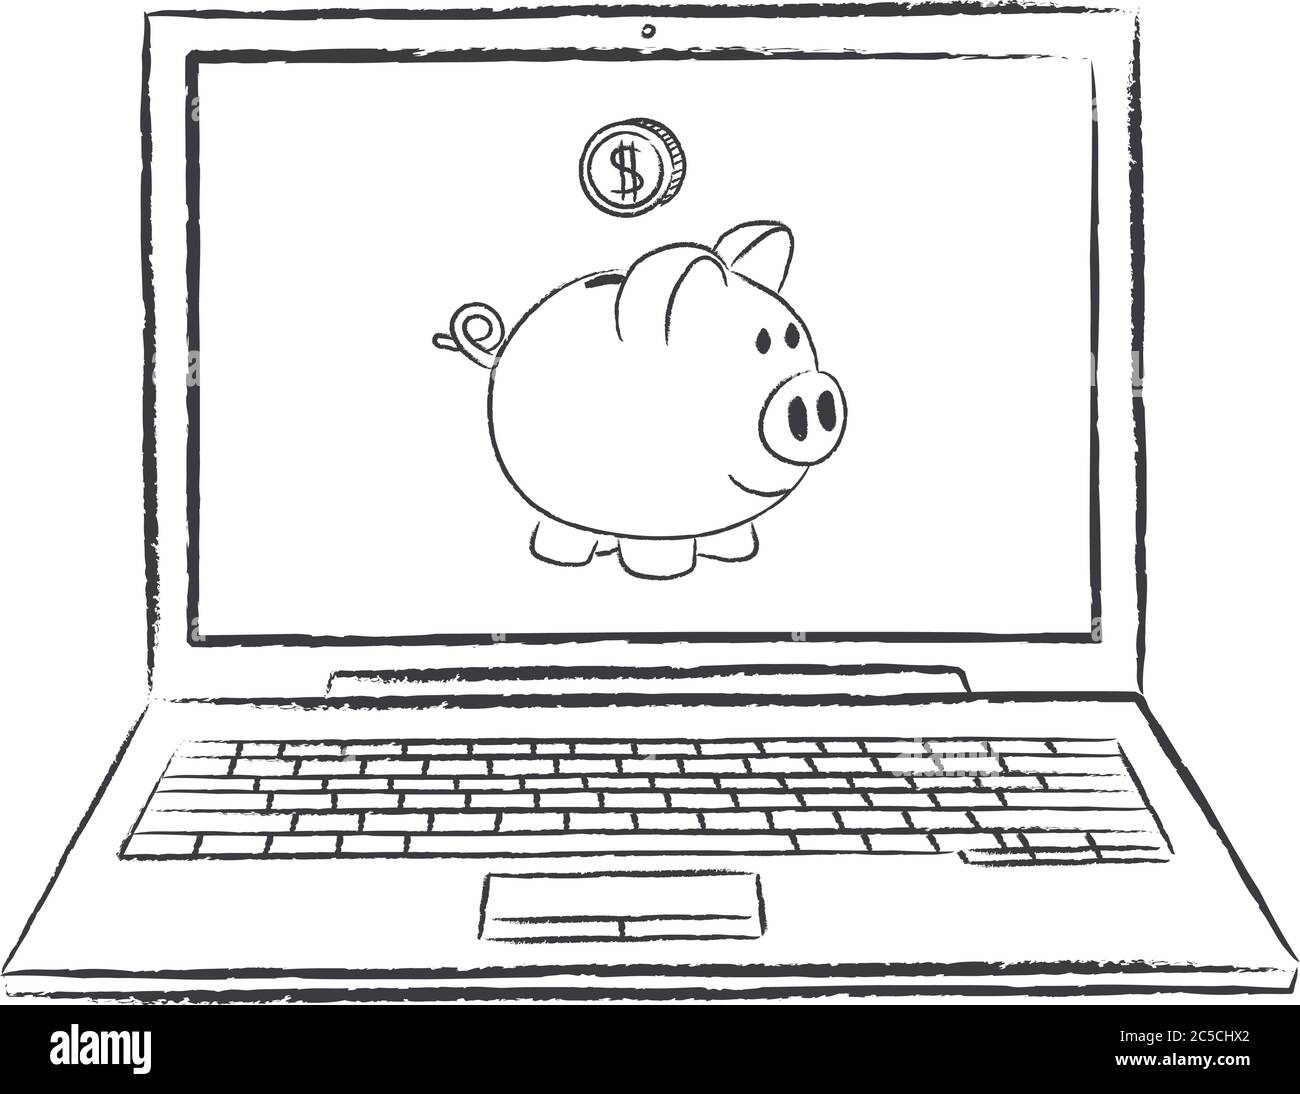 gesso doodle di laptop con banca piggy sullo schermo - vista frontale. Illustrazione vettoriale del doodle disegnato a mano. Illustrazione Vettoriale